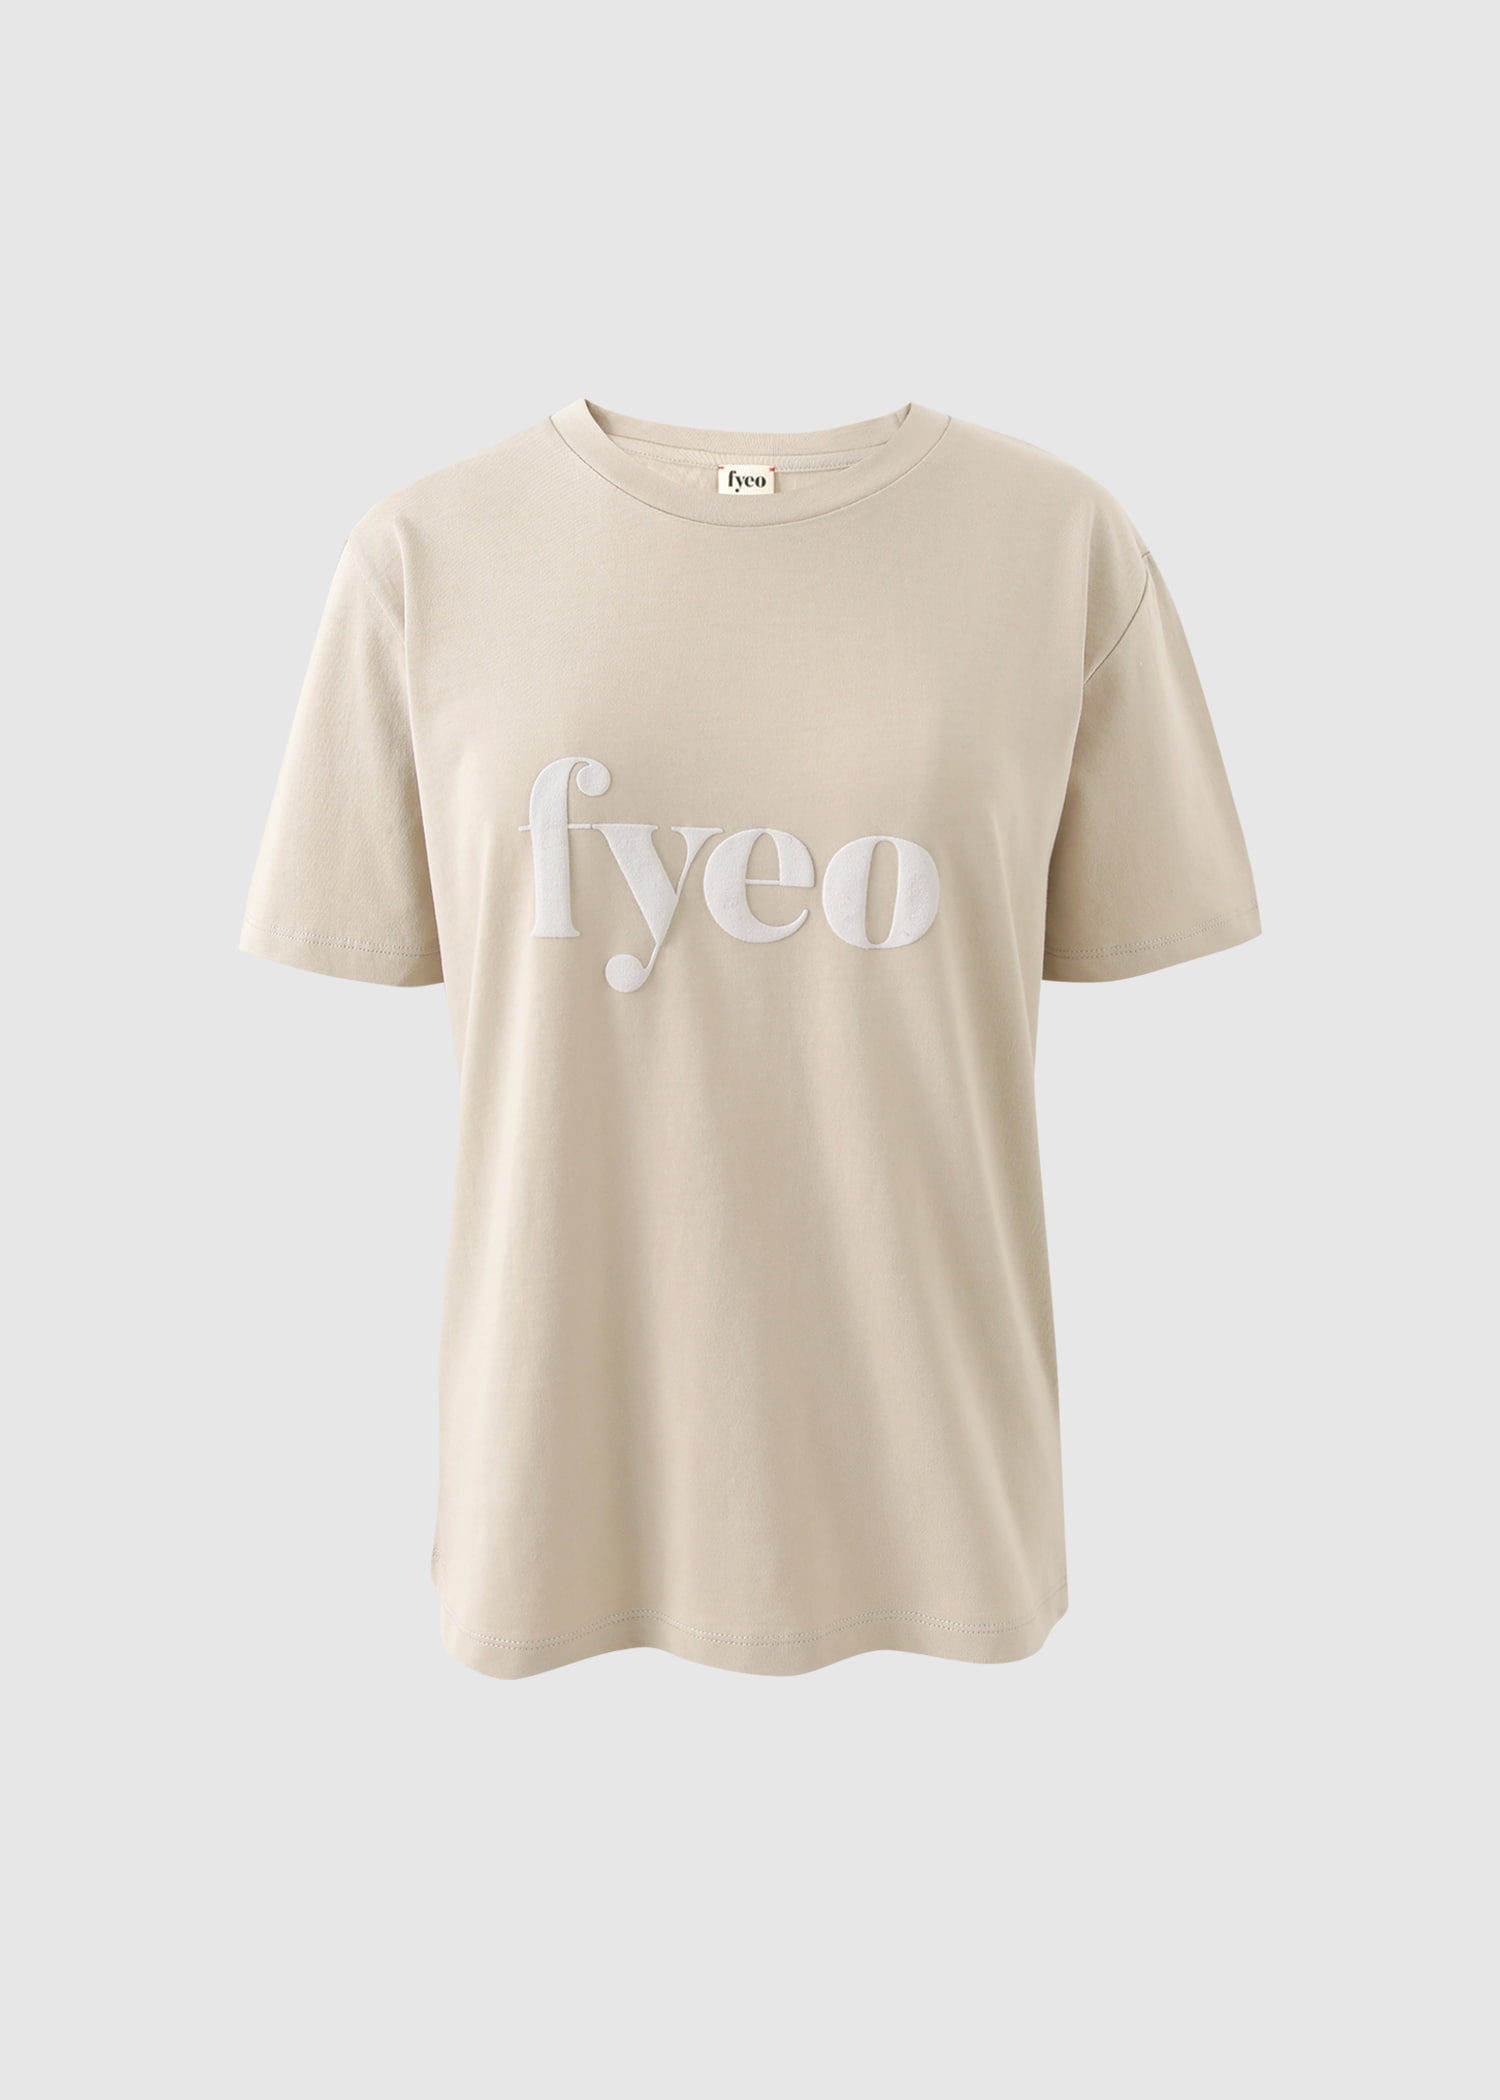 FYEO logo T-shirts